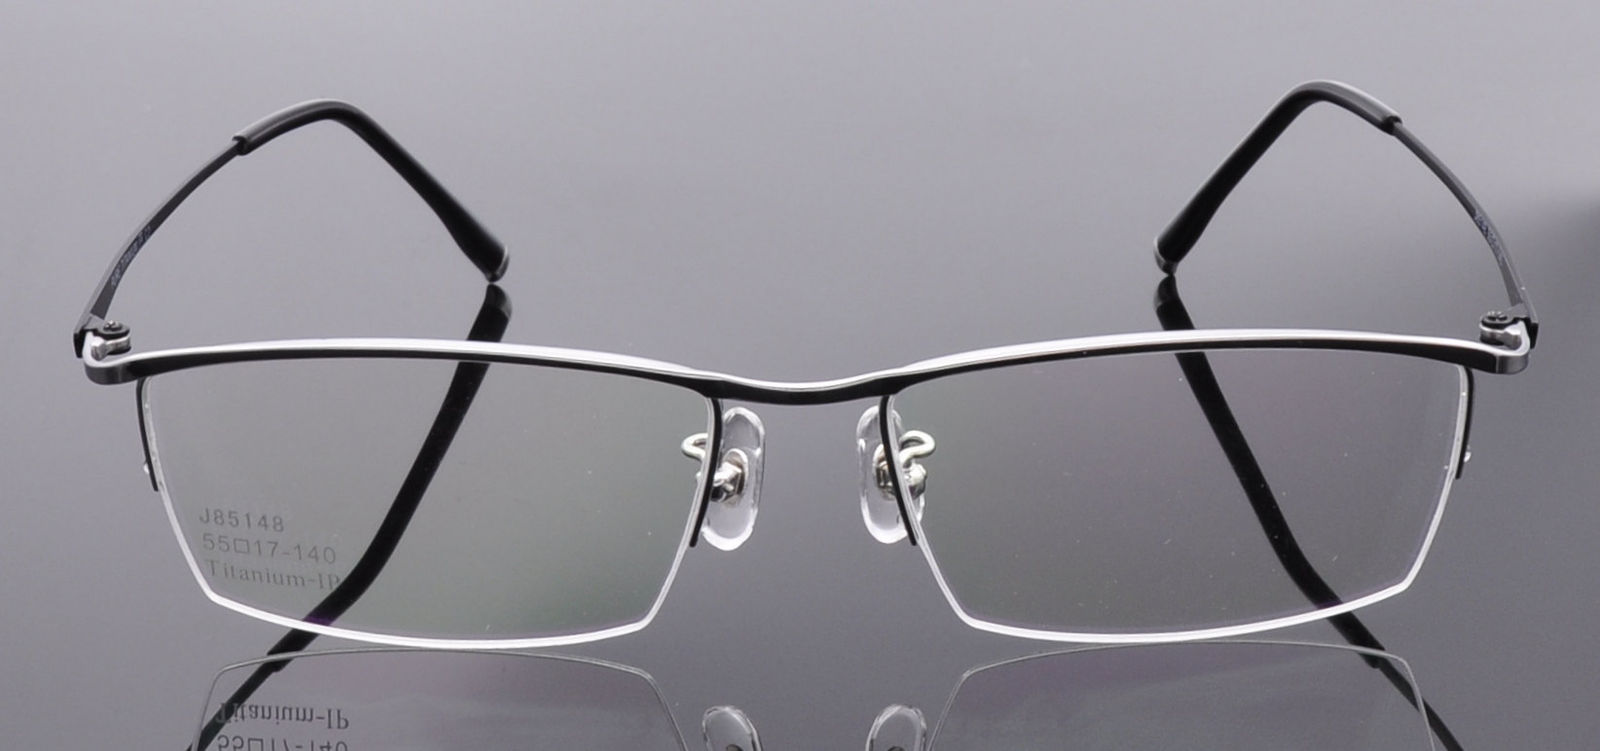 rectangular cateye frames glasses